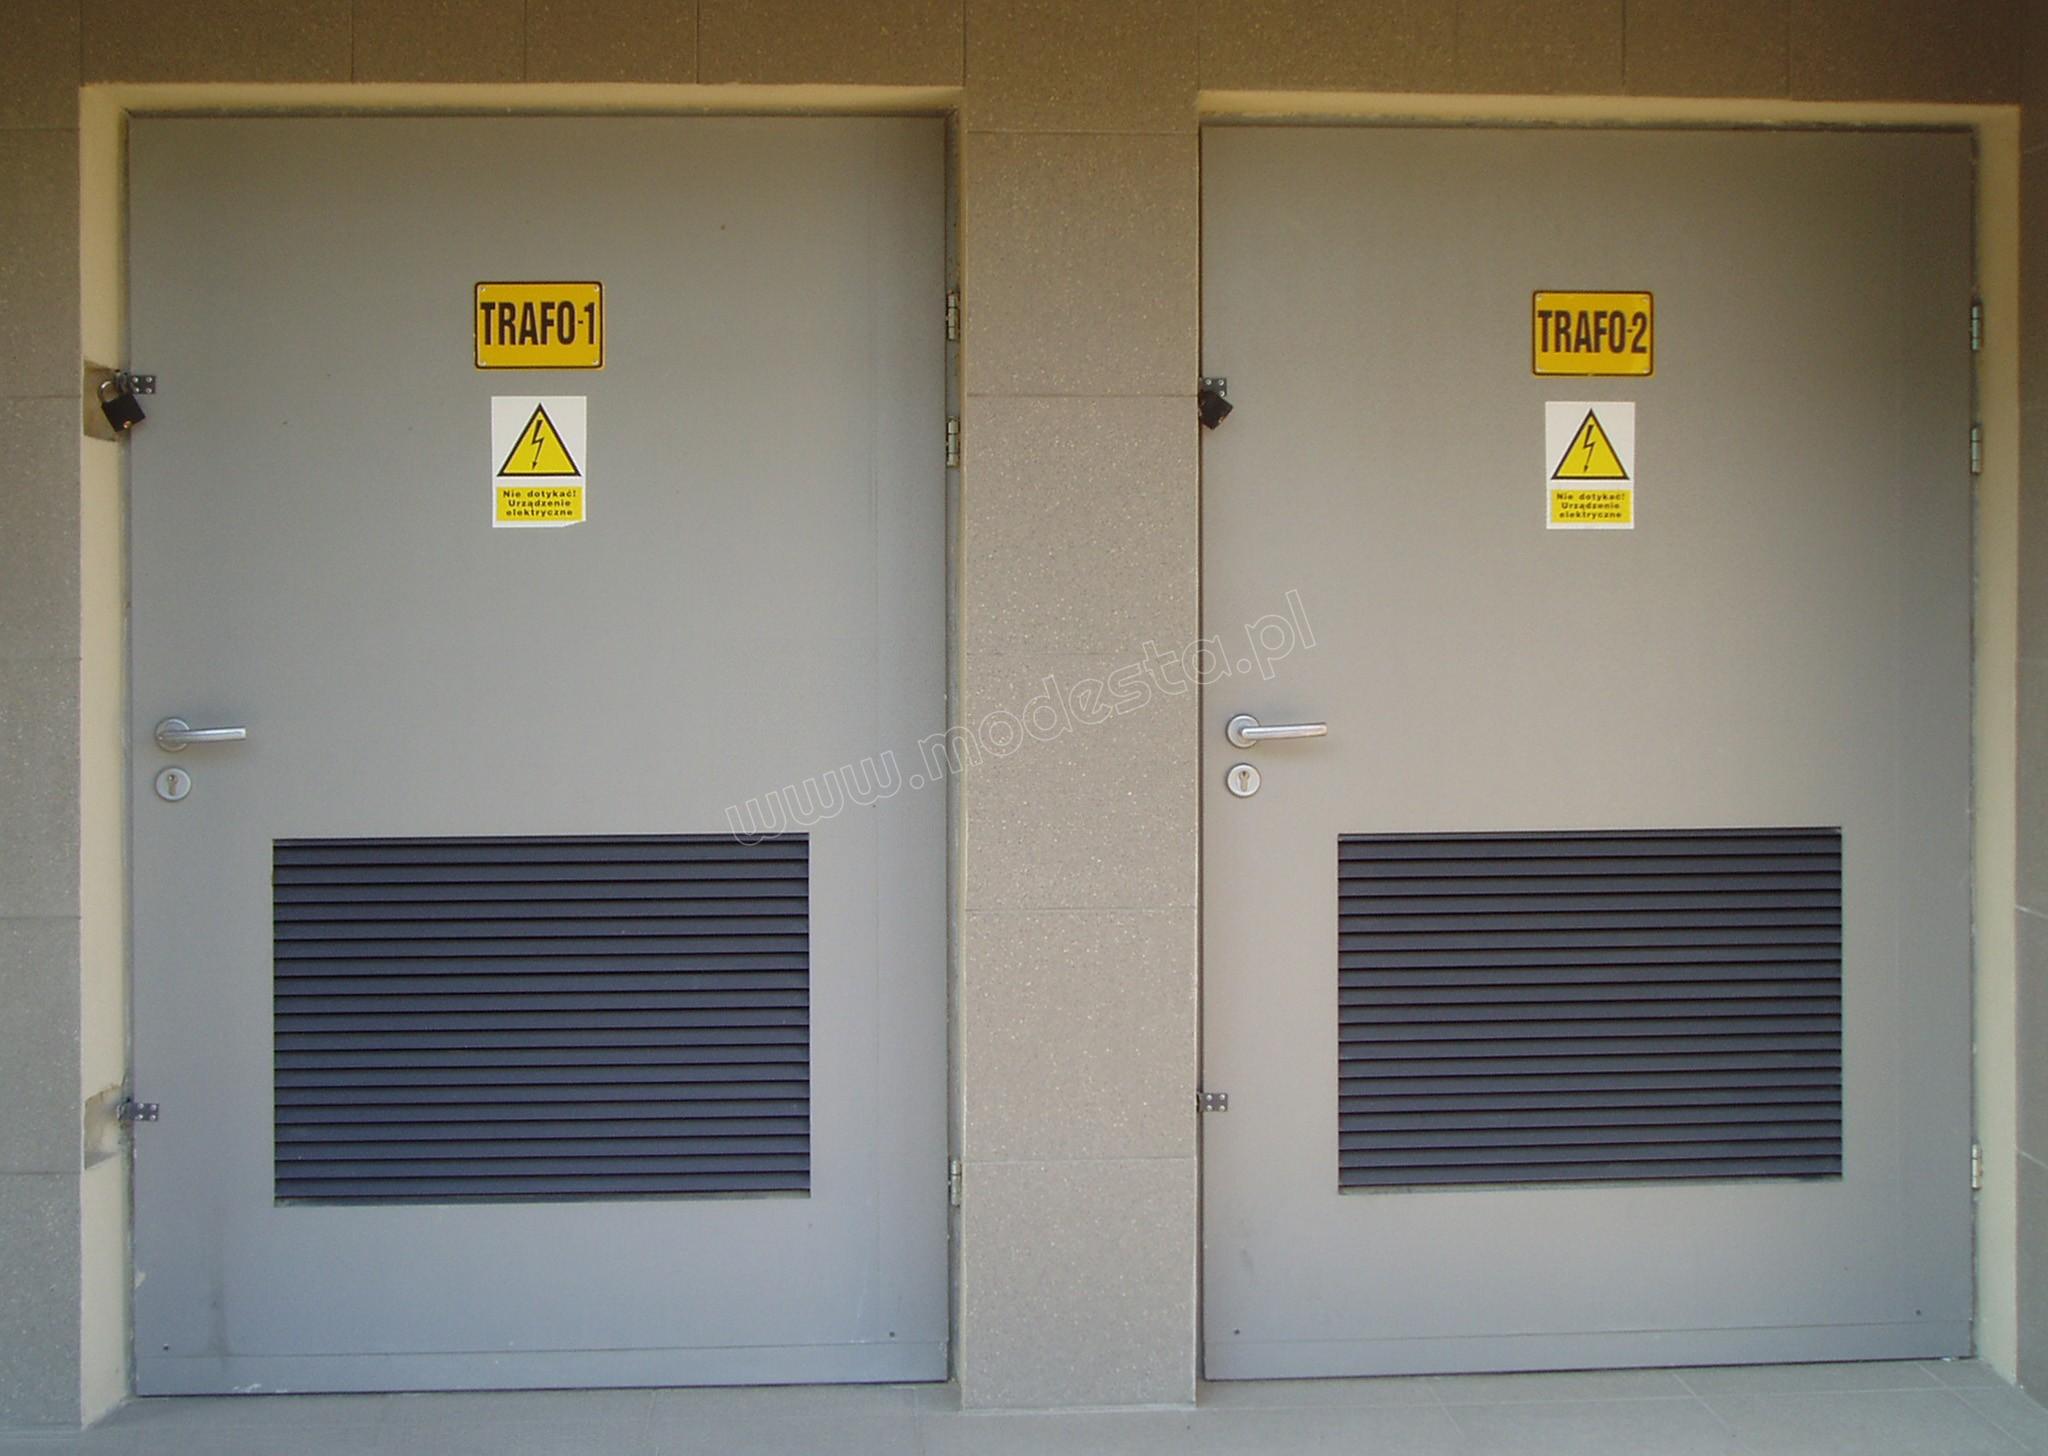 drzwi płytowe do stacji TRAFO wykonane z blachy stalowej laminowanej w kolorze szarym, wyposażone w antywłamaniowe zamki ewakuacyjne, okucia ze stali nierdzewnej, specjalne żaluzje wentylacyjne oraz dodatkowe zamknięcia na kłódkę